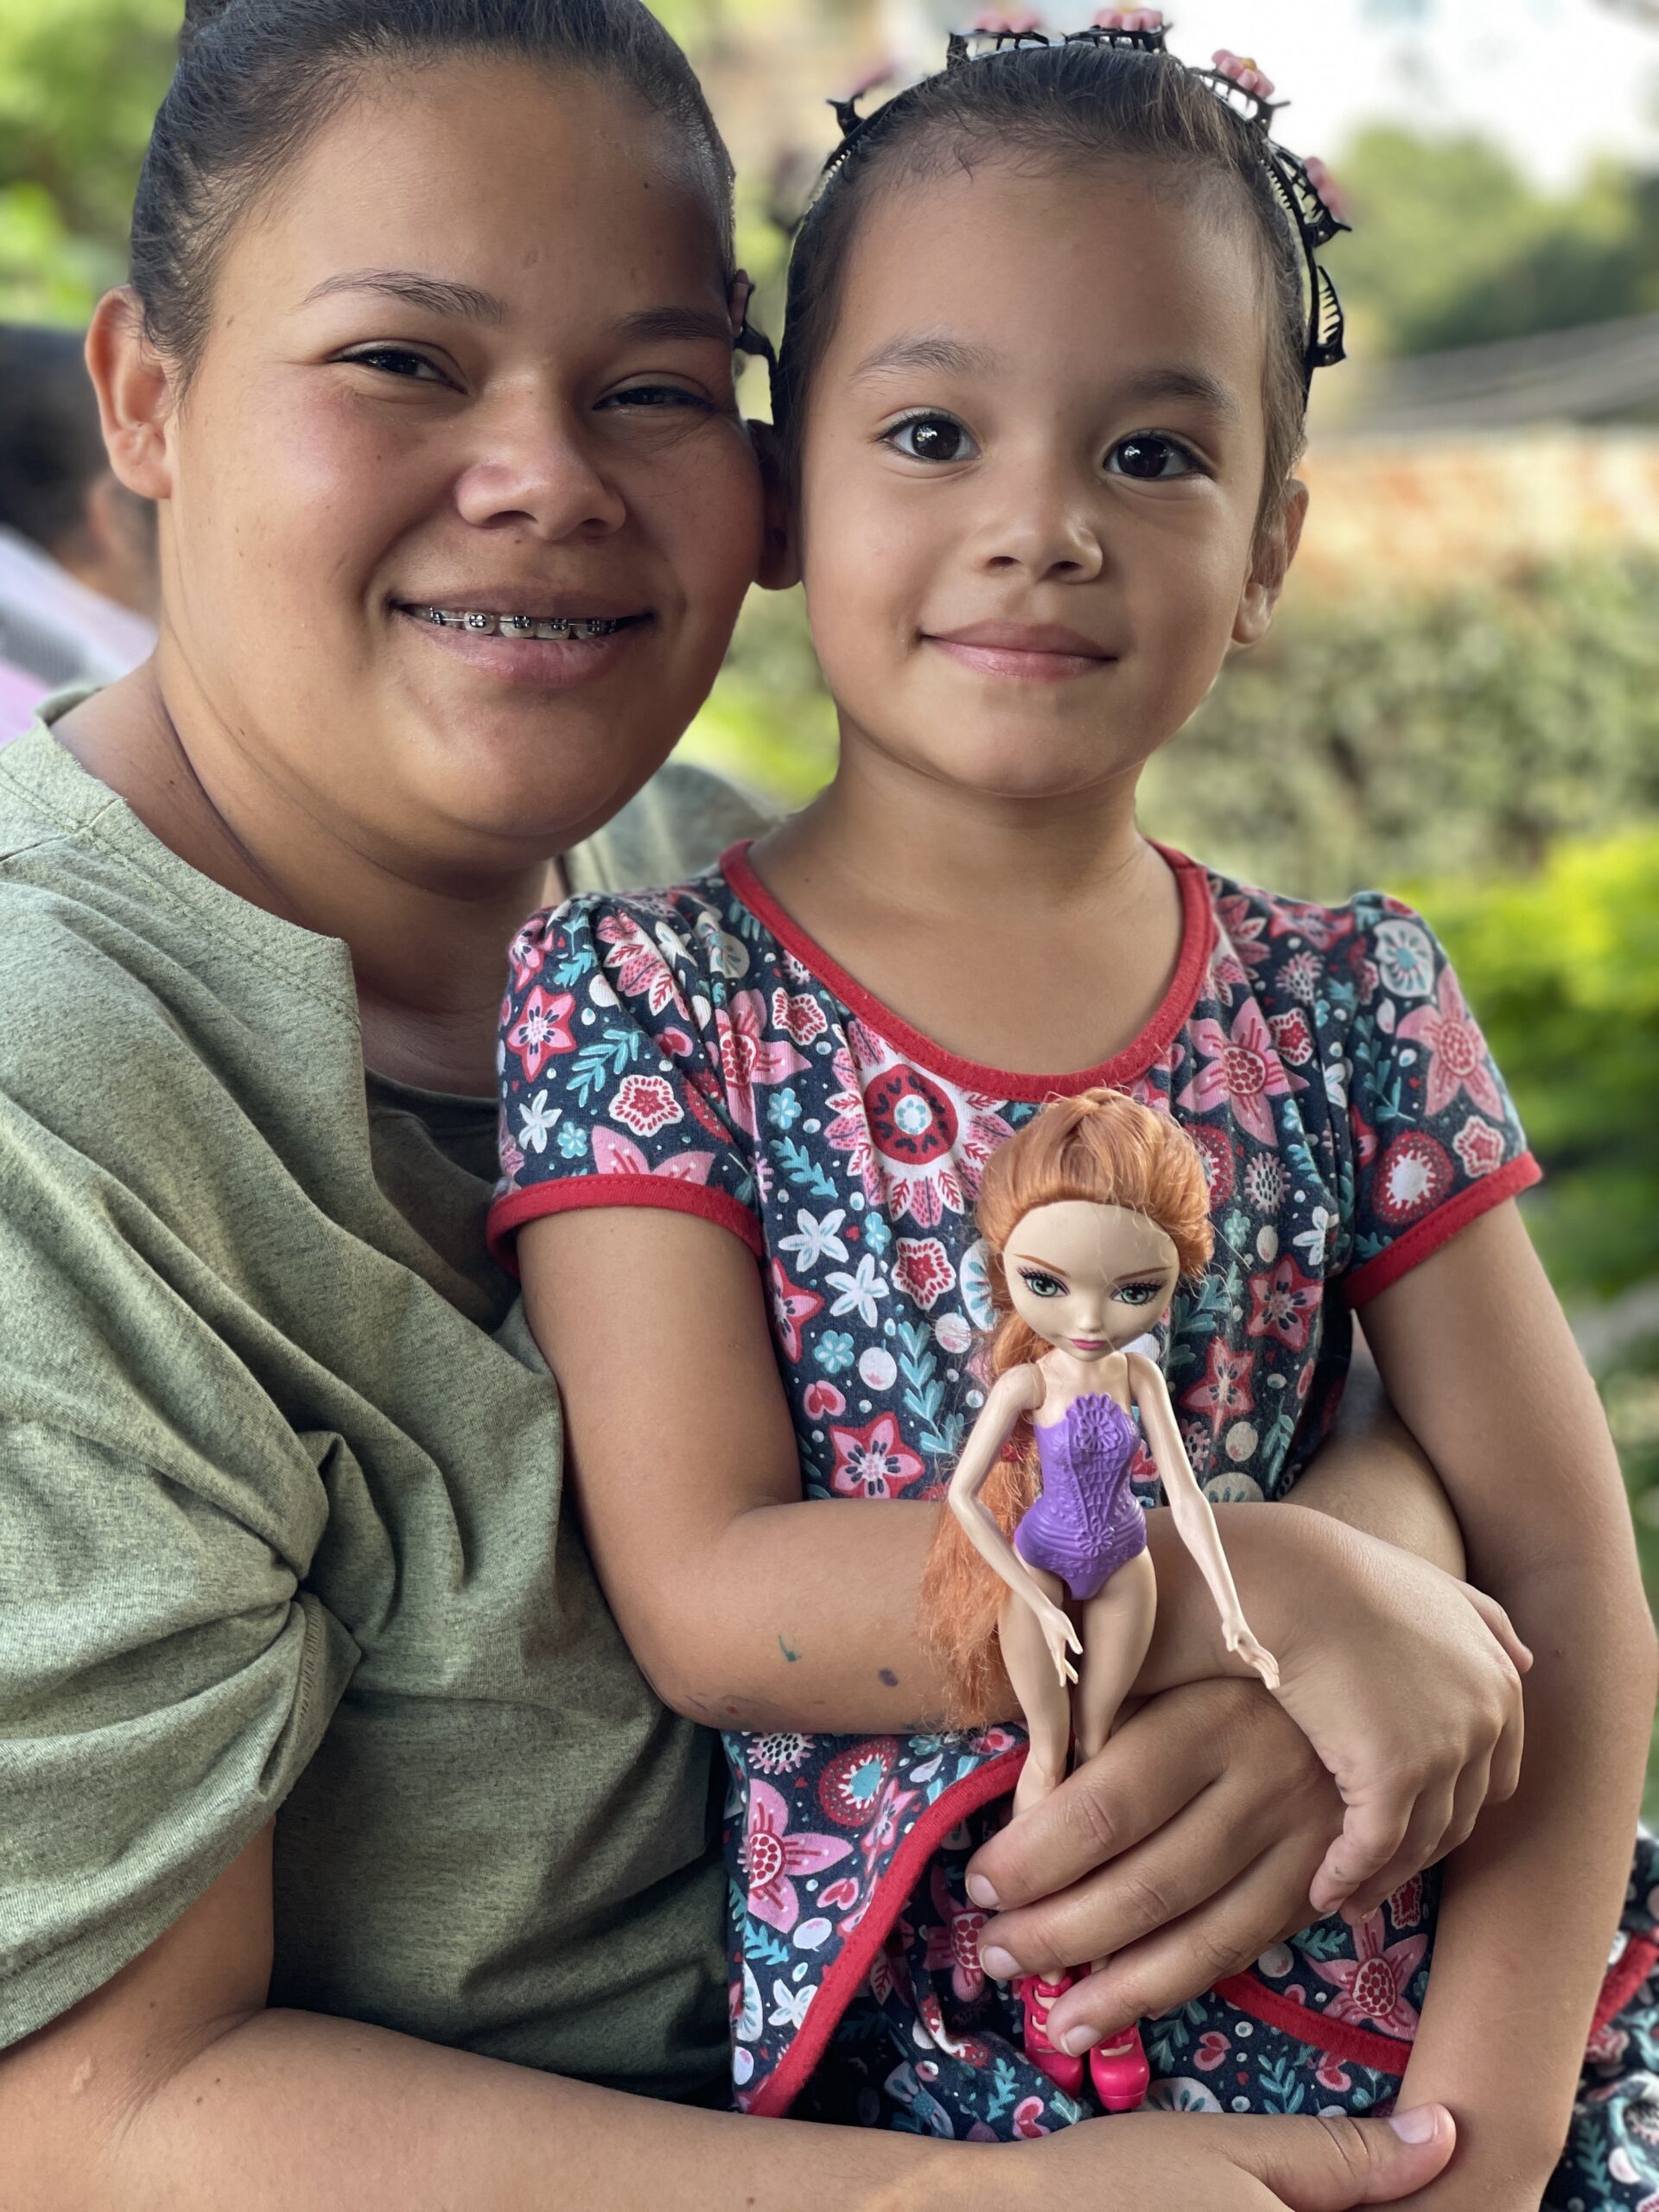 Doação de brinquedos traz sorrisos e esperança para crianças afetadas pela tragédia no RS